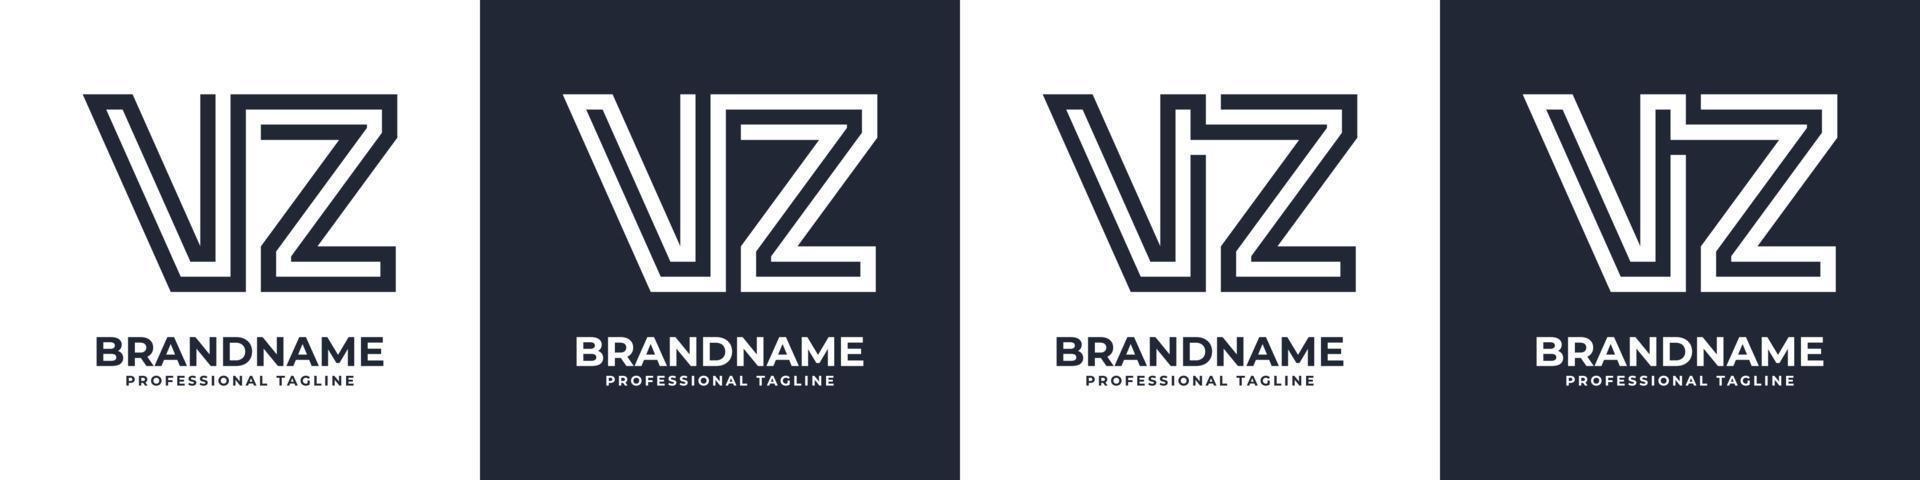 semplice vz monogramma logo, adatto per qualunque attività commerciale con vz o zv iniziale. vettore